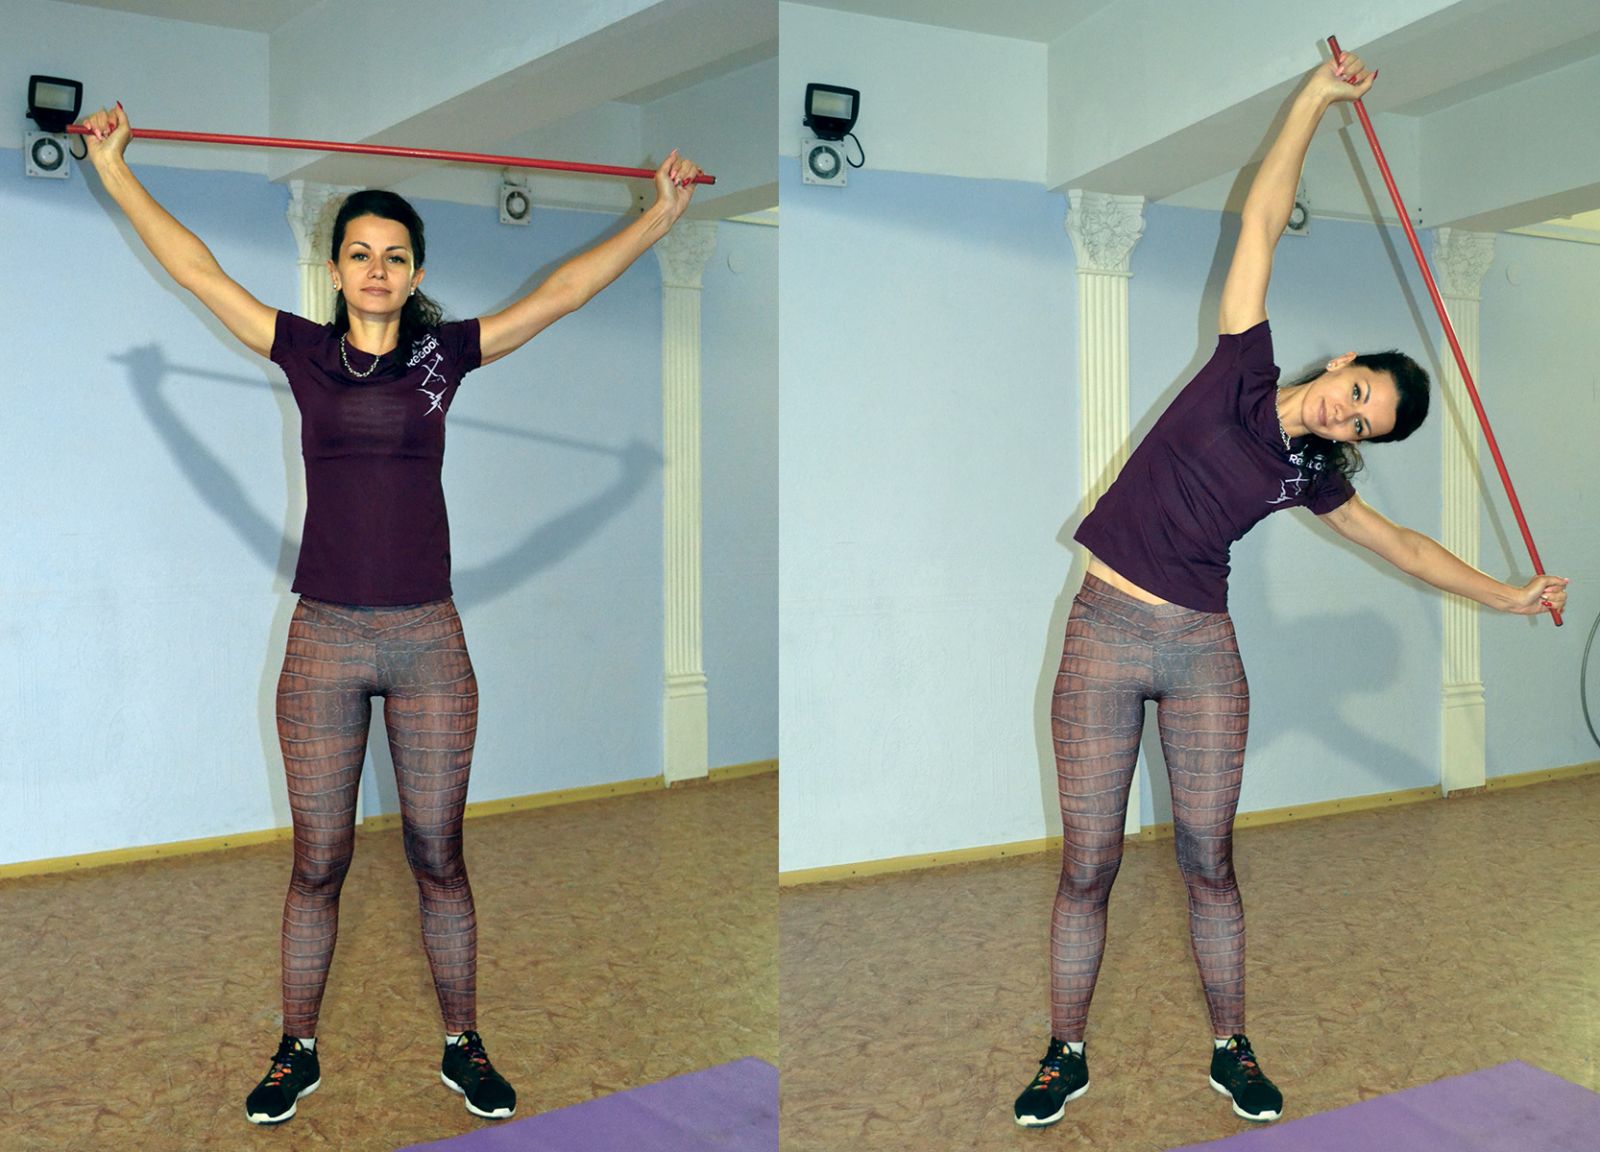 Упражнения с гимнастической палкой: комплекс упражнений и советы по тренировке основных групп мышц (120 фото)